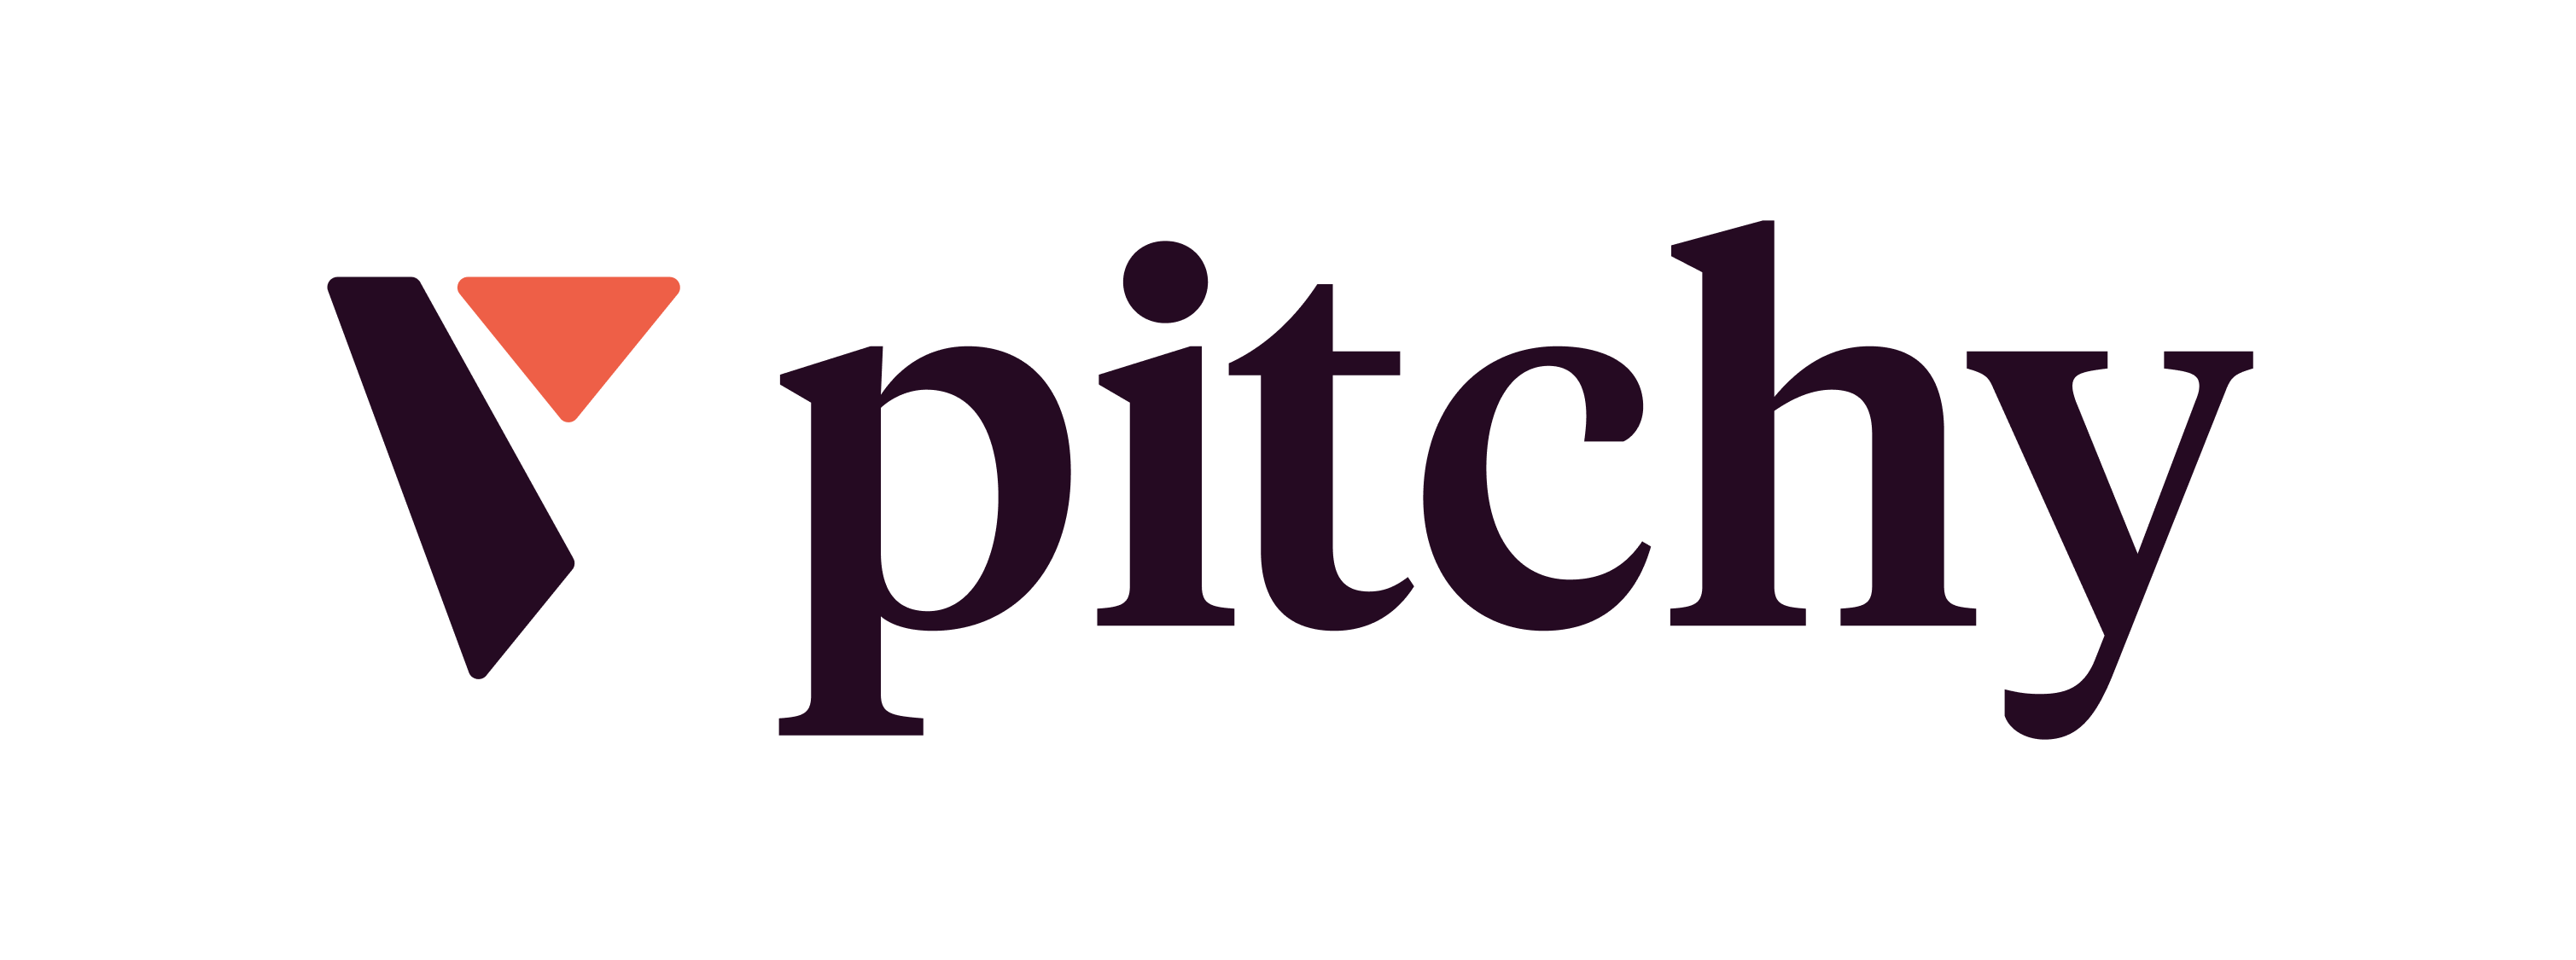 Pitchy_Logo_RVB_MASTER